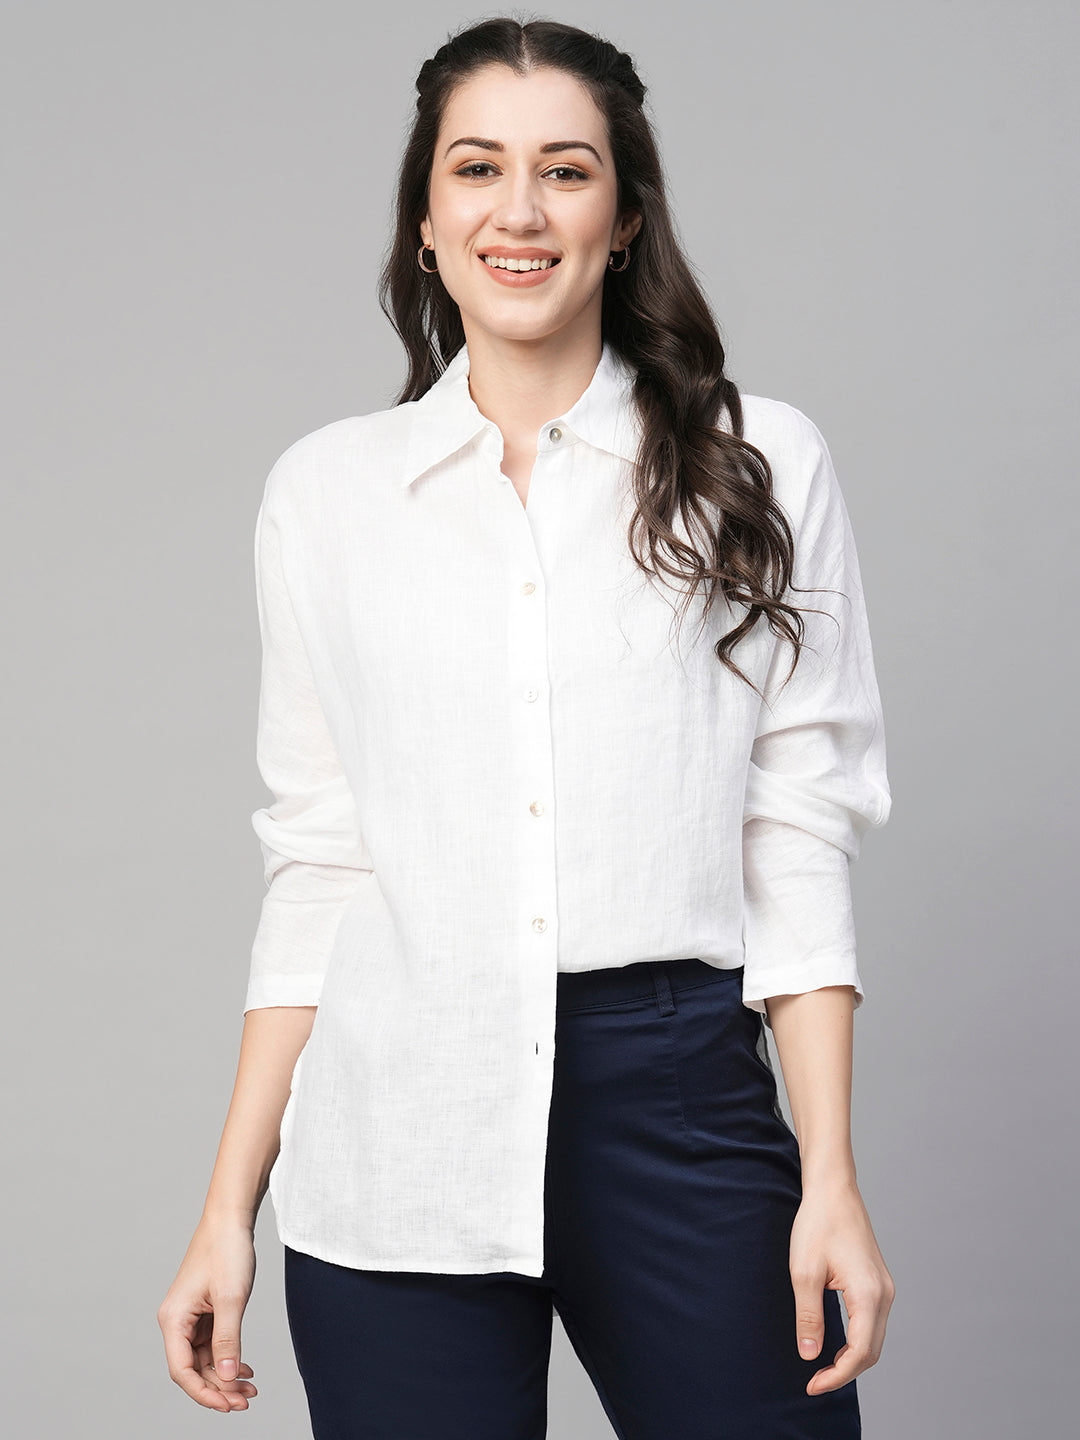 Women's White Linen Regular Fit Blouse